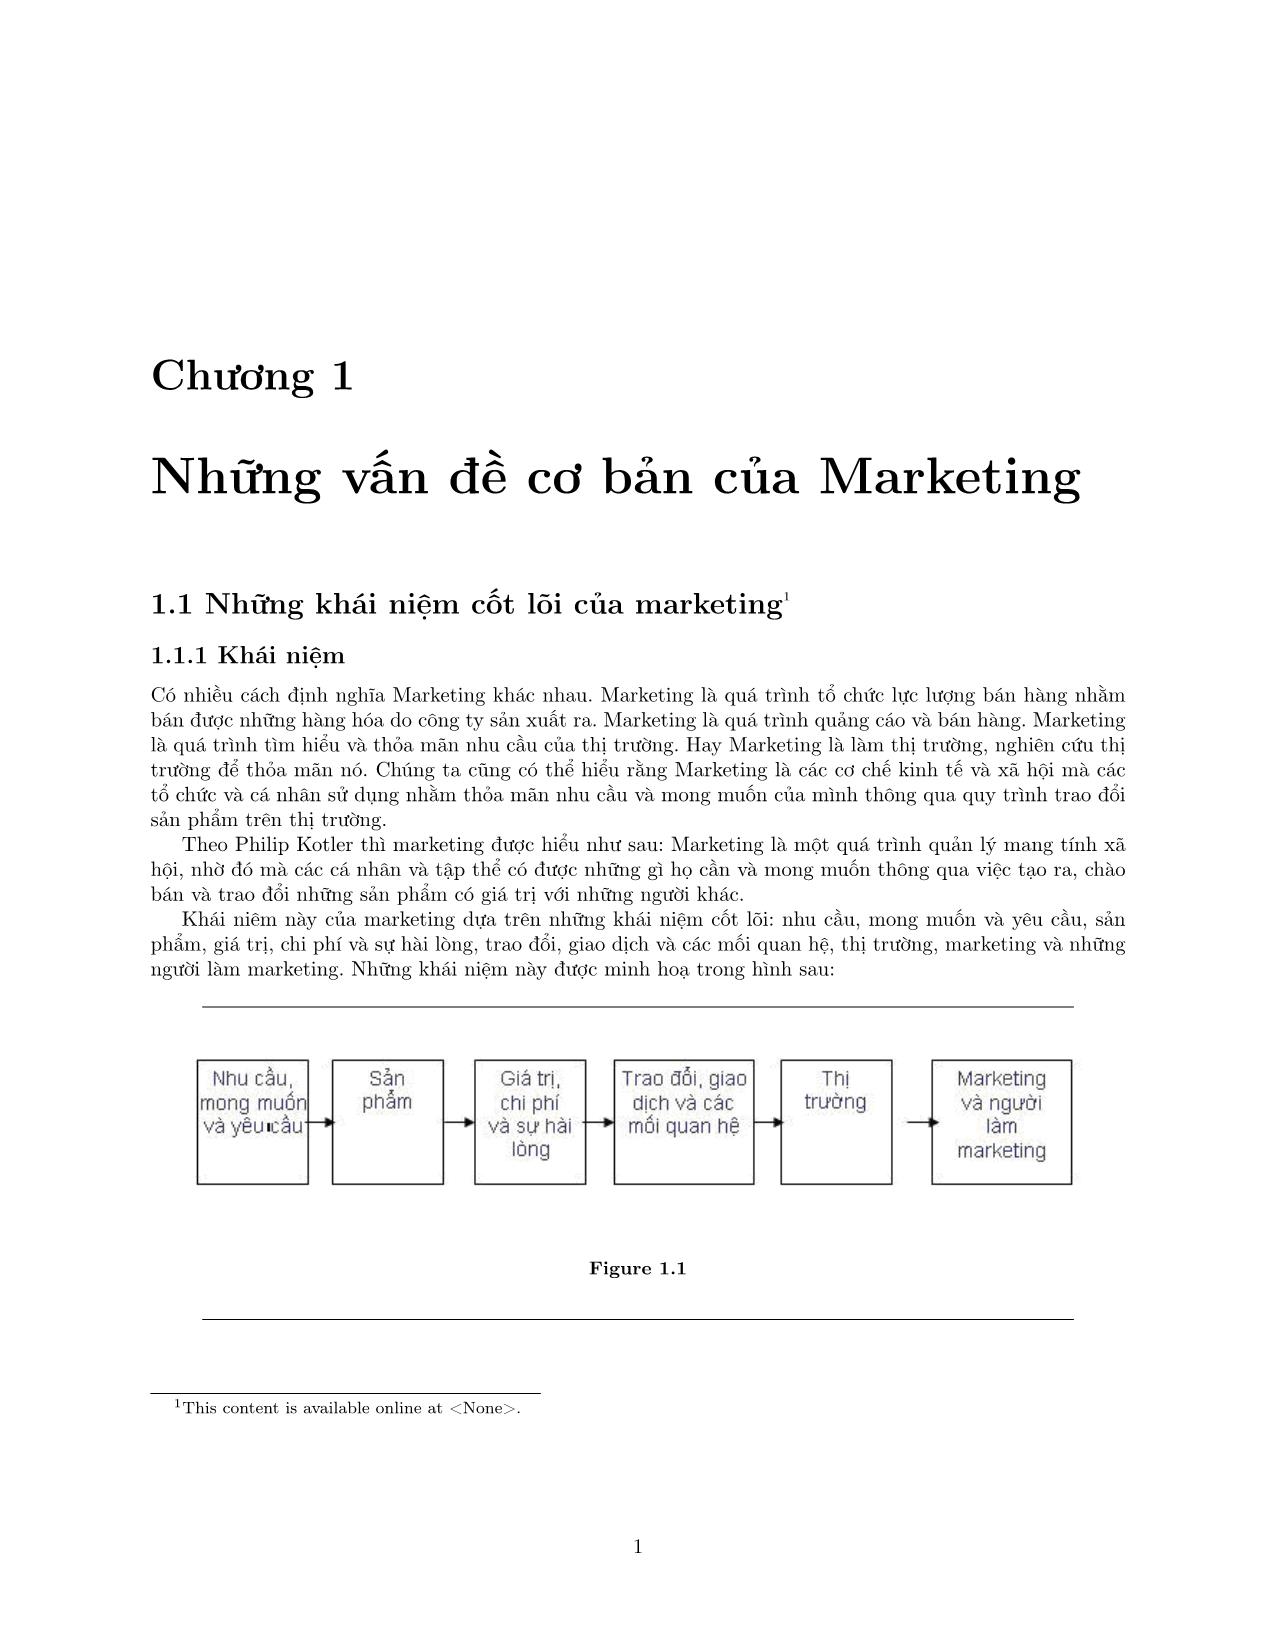 Hệ thống thông tin marketing và nghiên cứu marketing trang 5